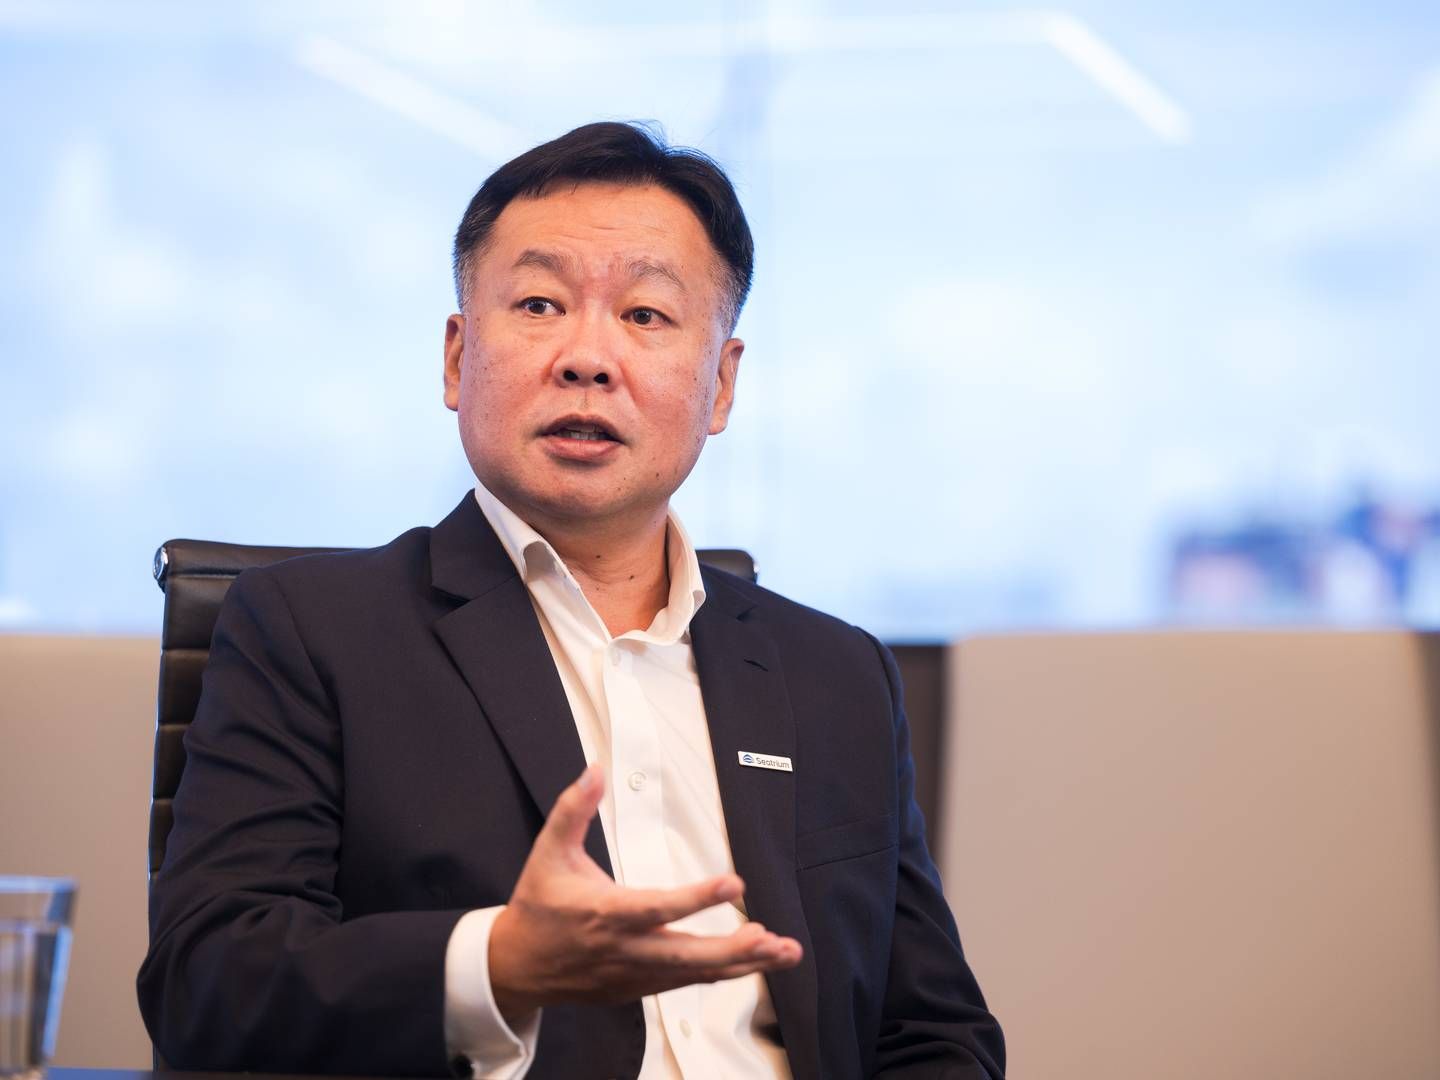 James Ong er topchef for det store Singapore-baserede værft Seatrium. | Foto: Joe Nair